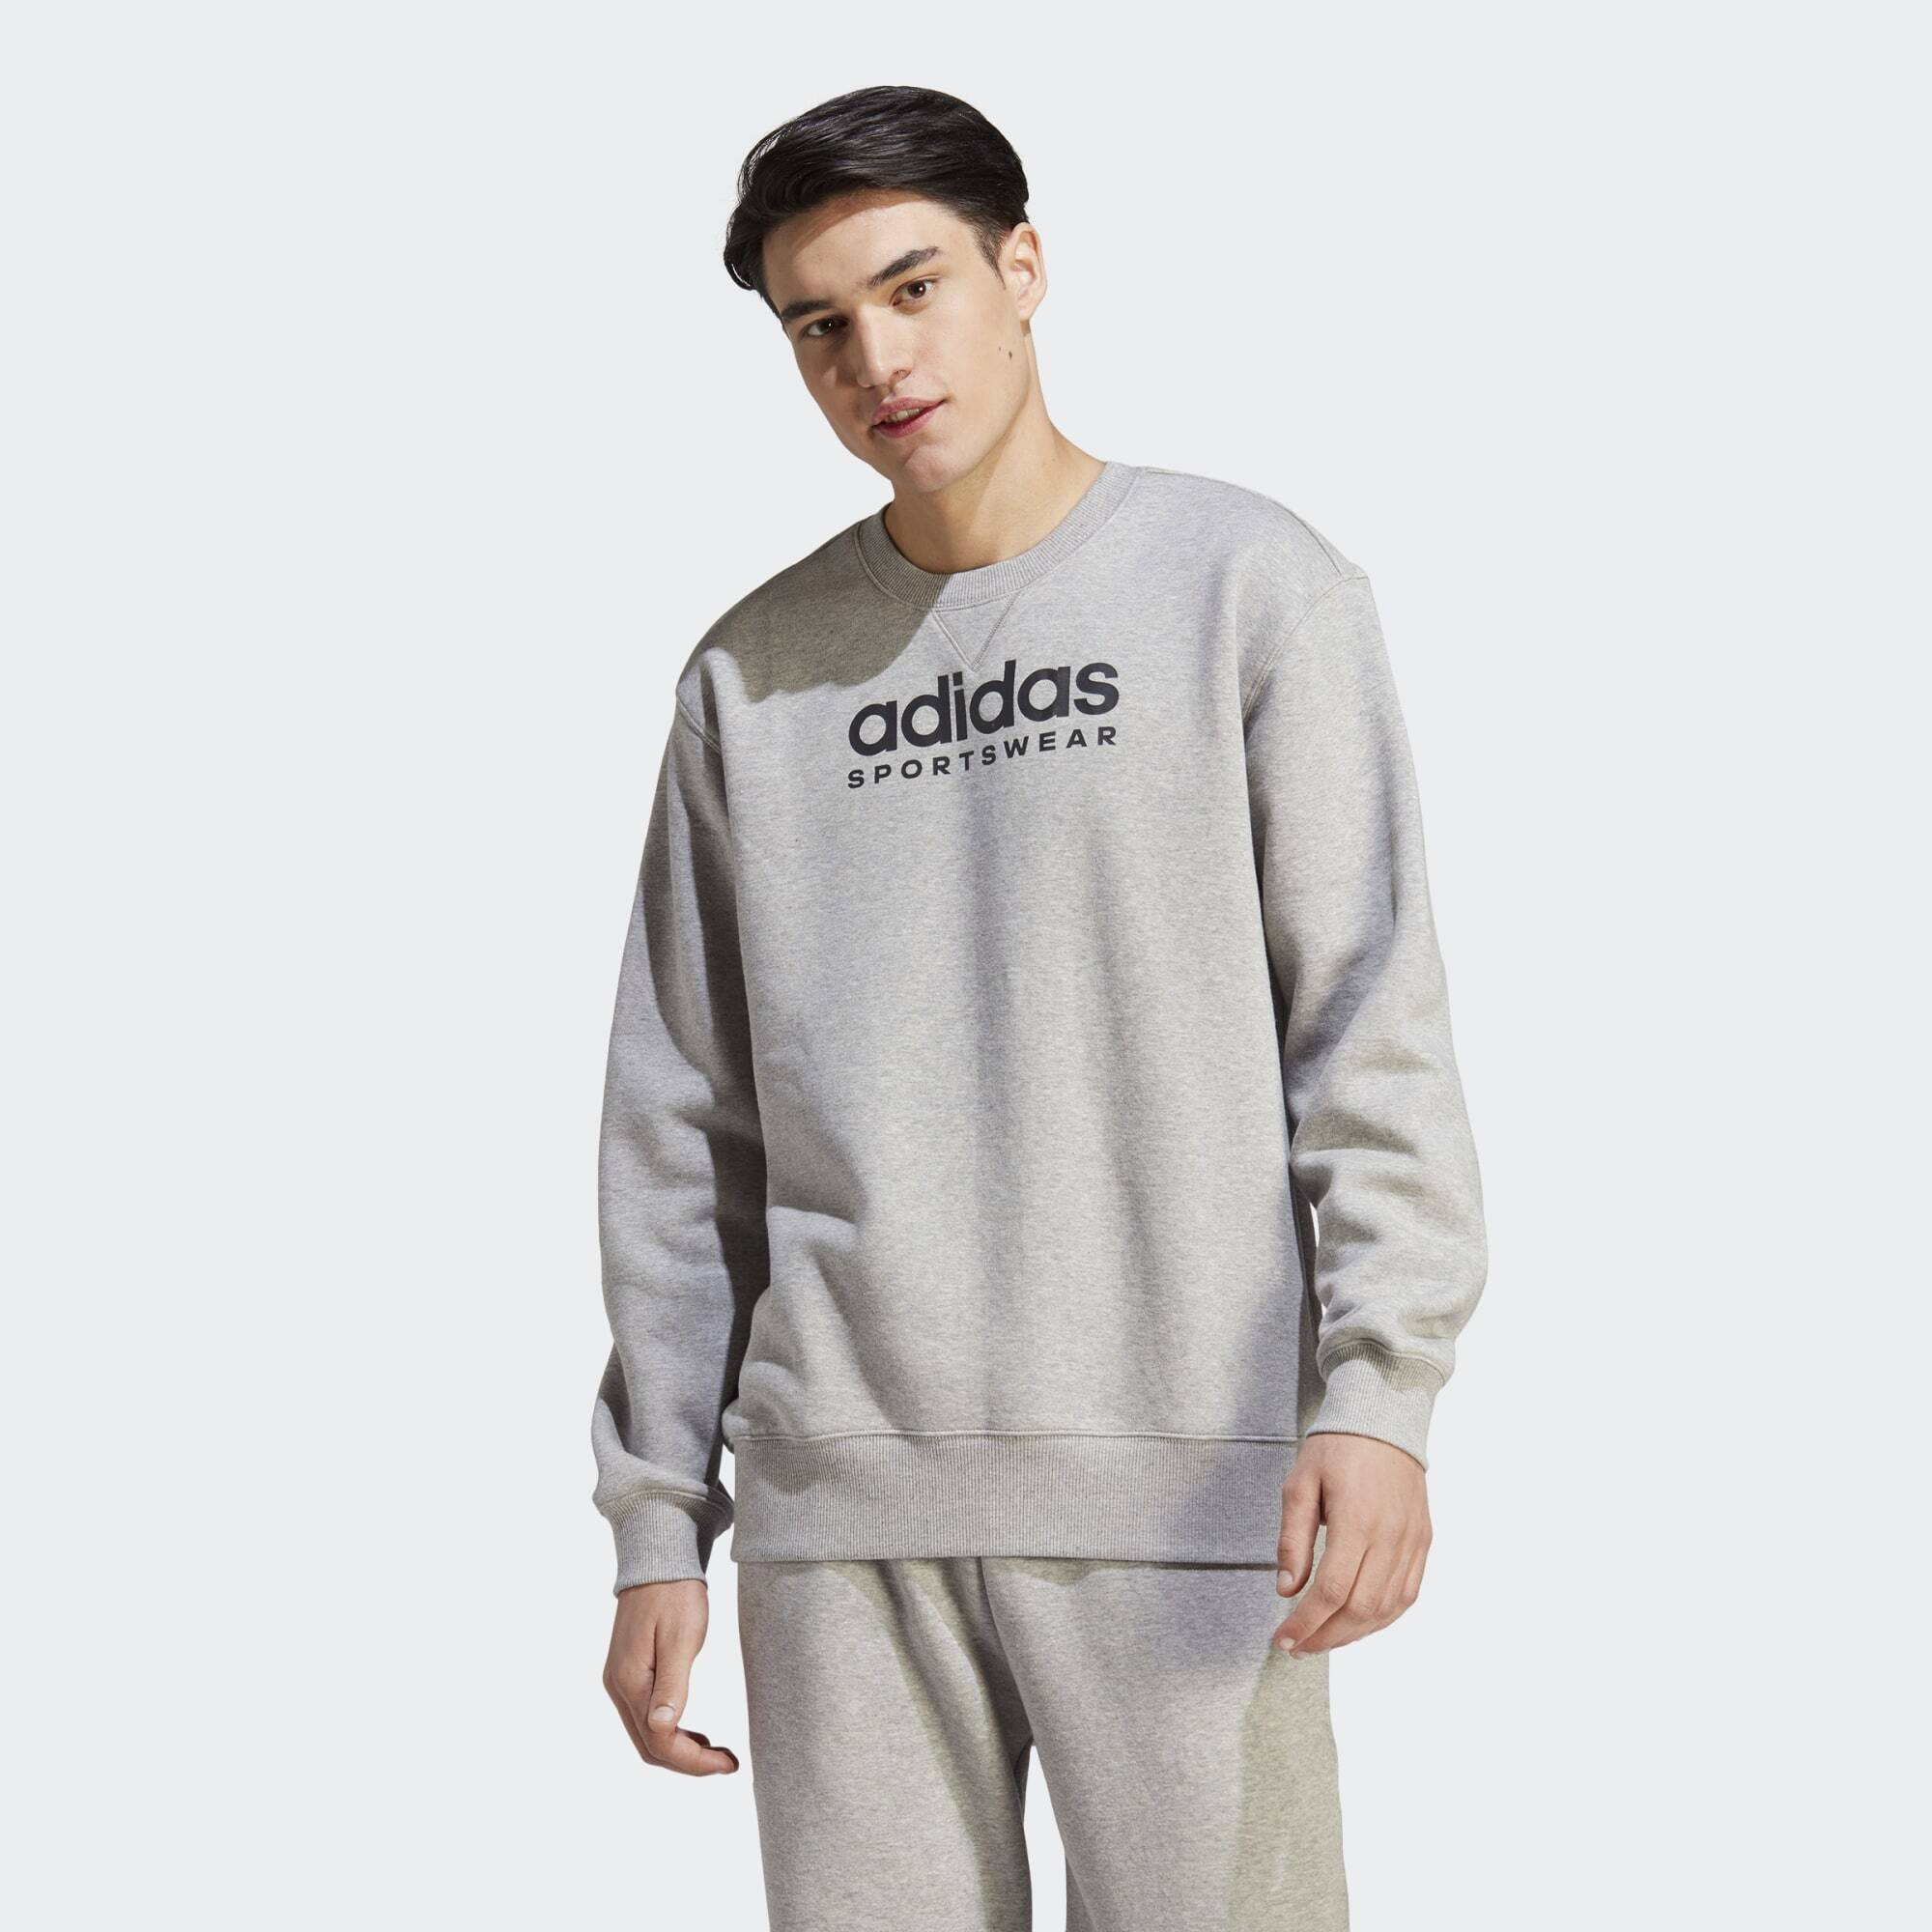 adidas All SZN Fleece Graphic Sweatshirt (9000155813_2113)